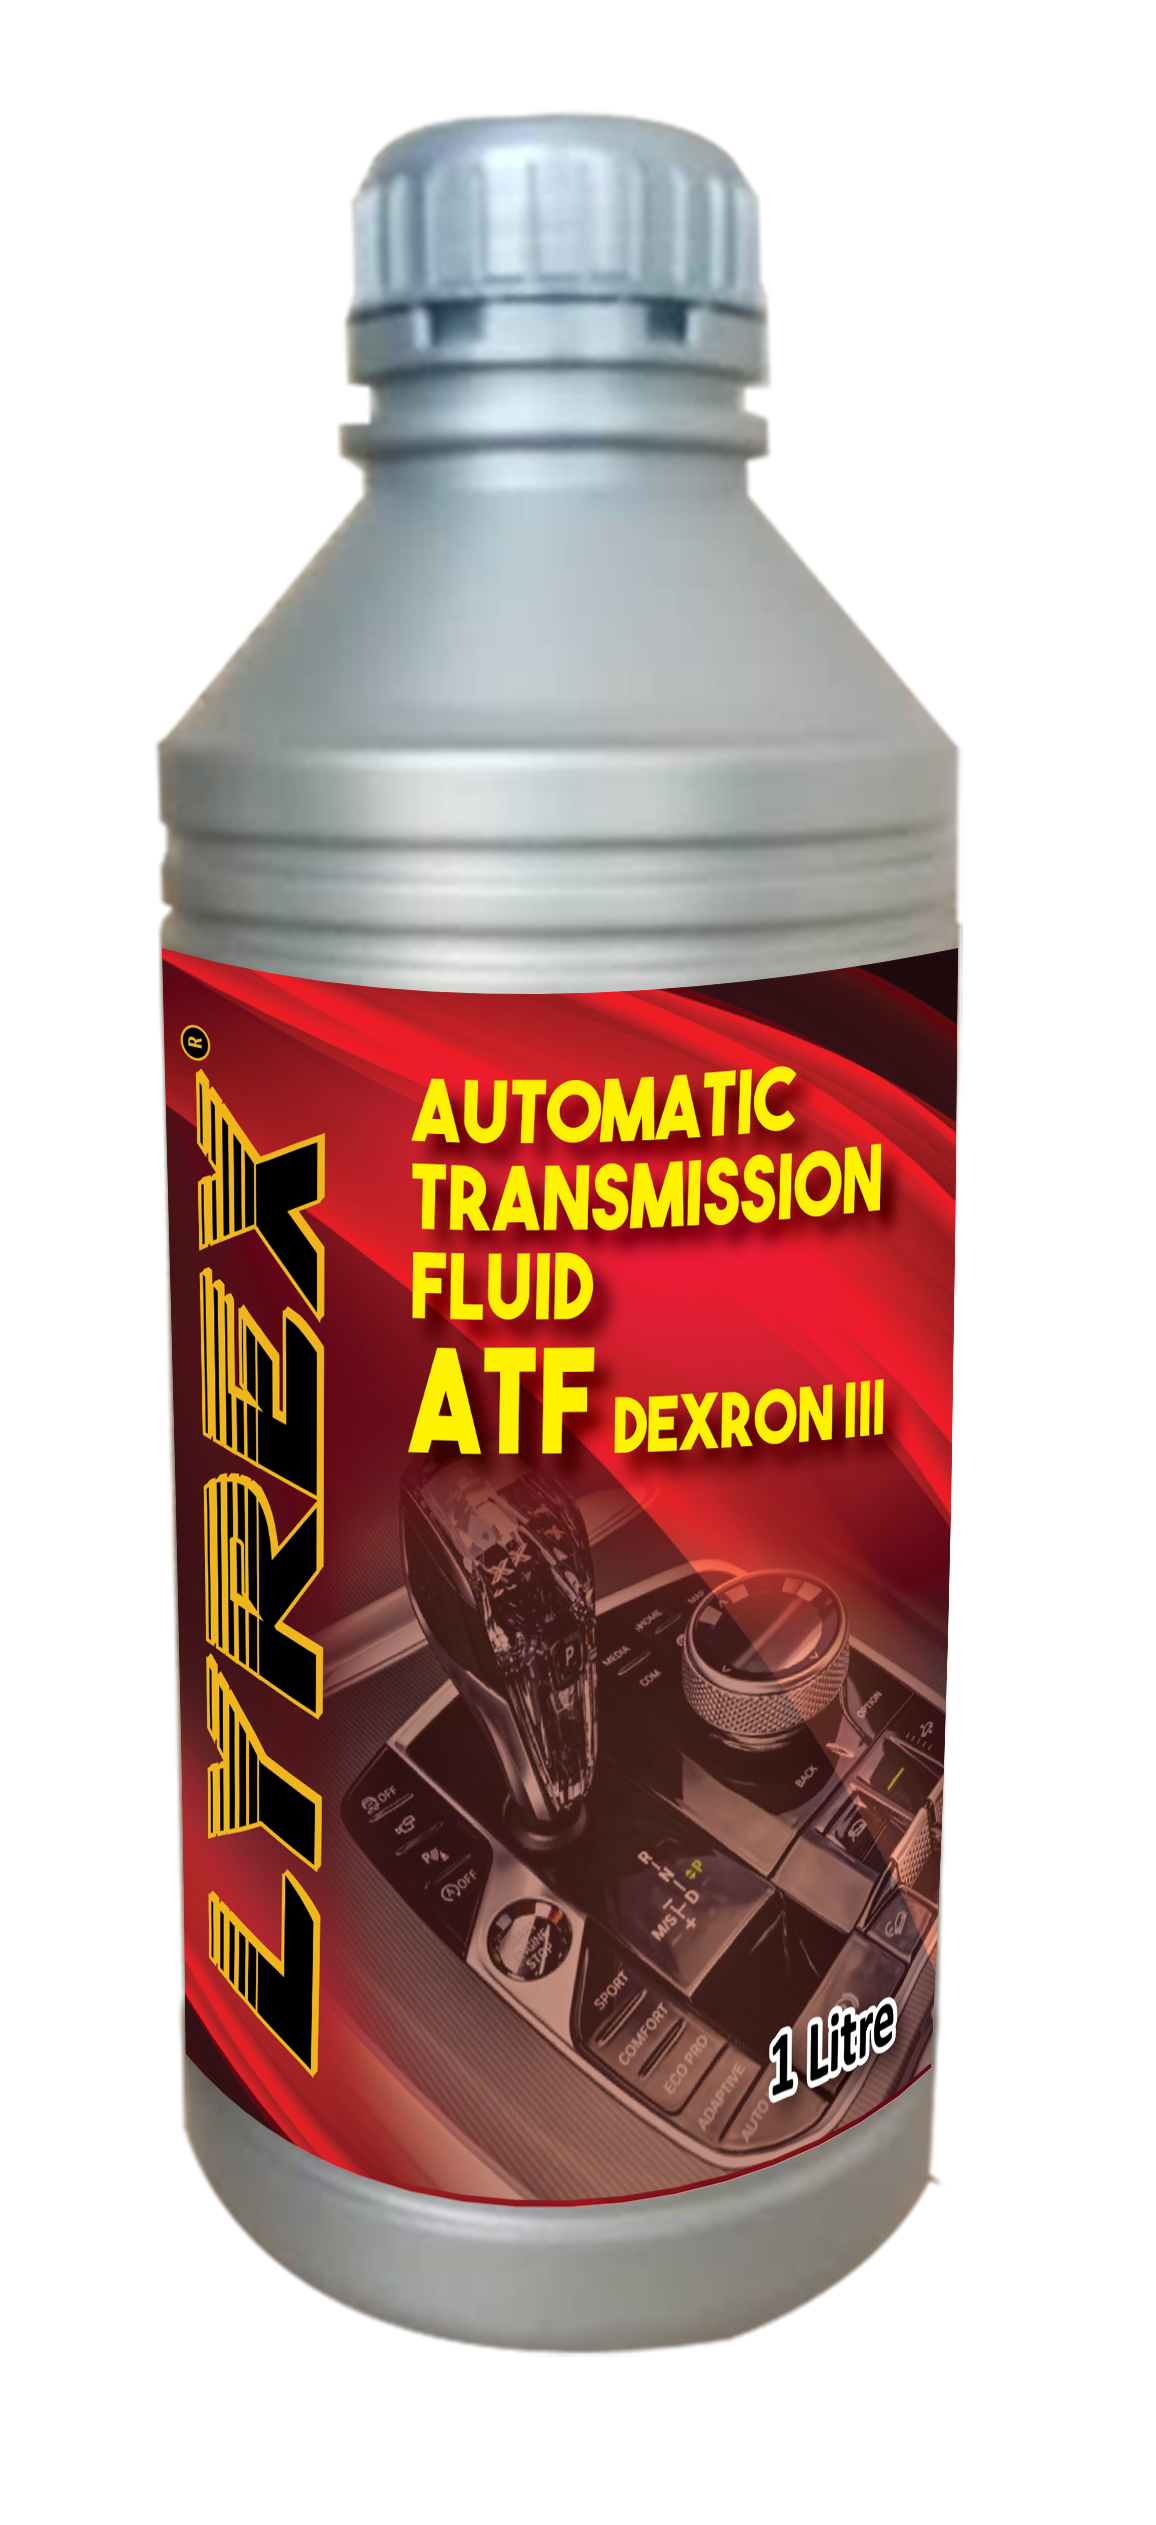 ATF DEXRON III 1 Liters